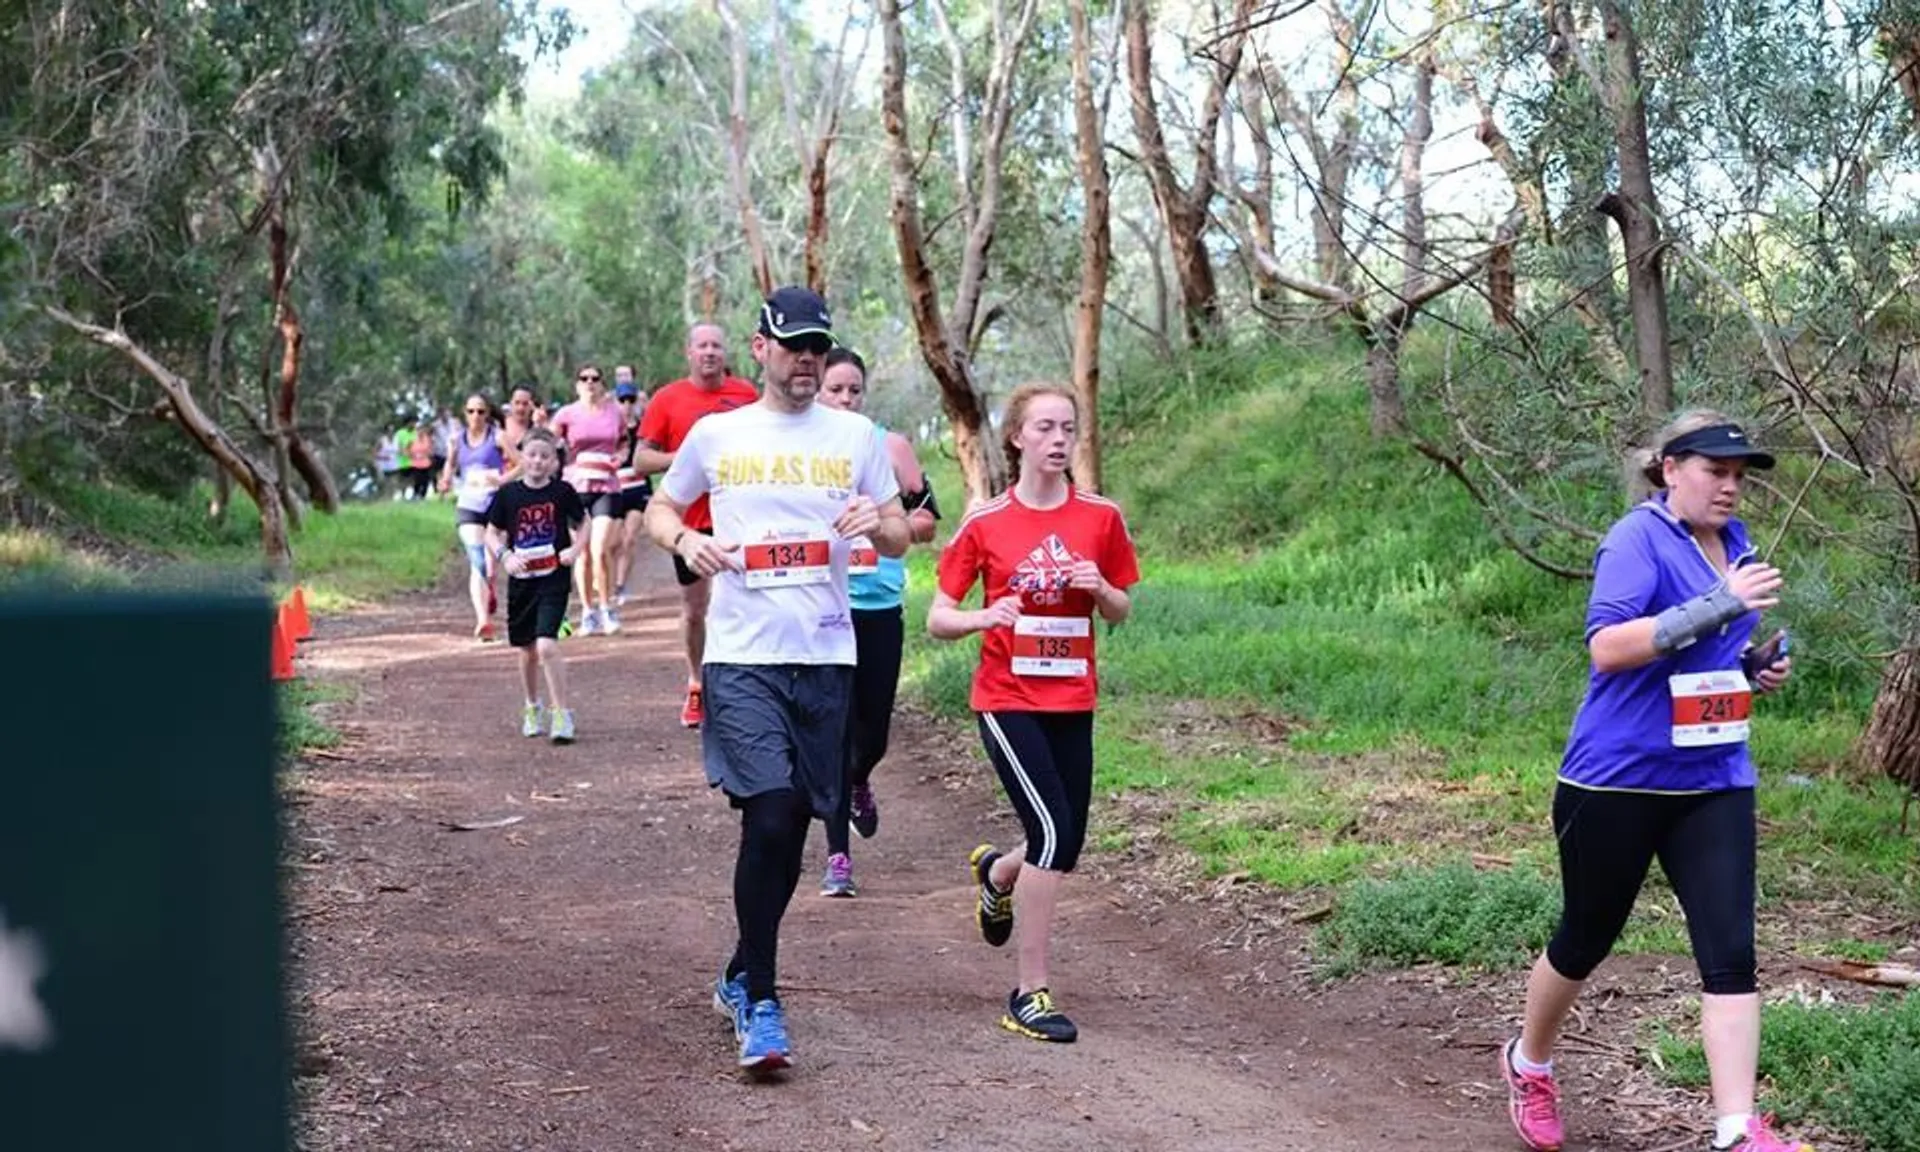 Wangaratta Marathon and Fun Runs